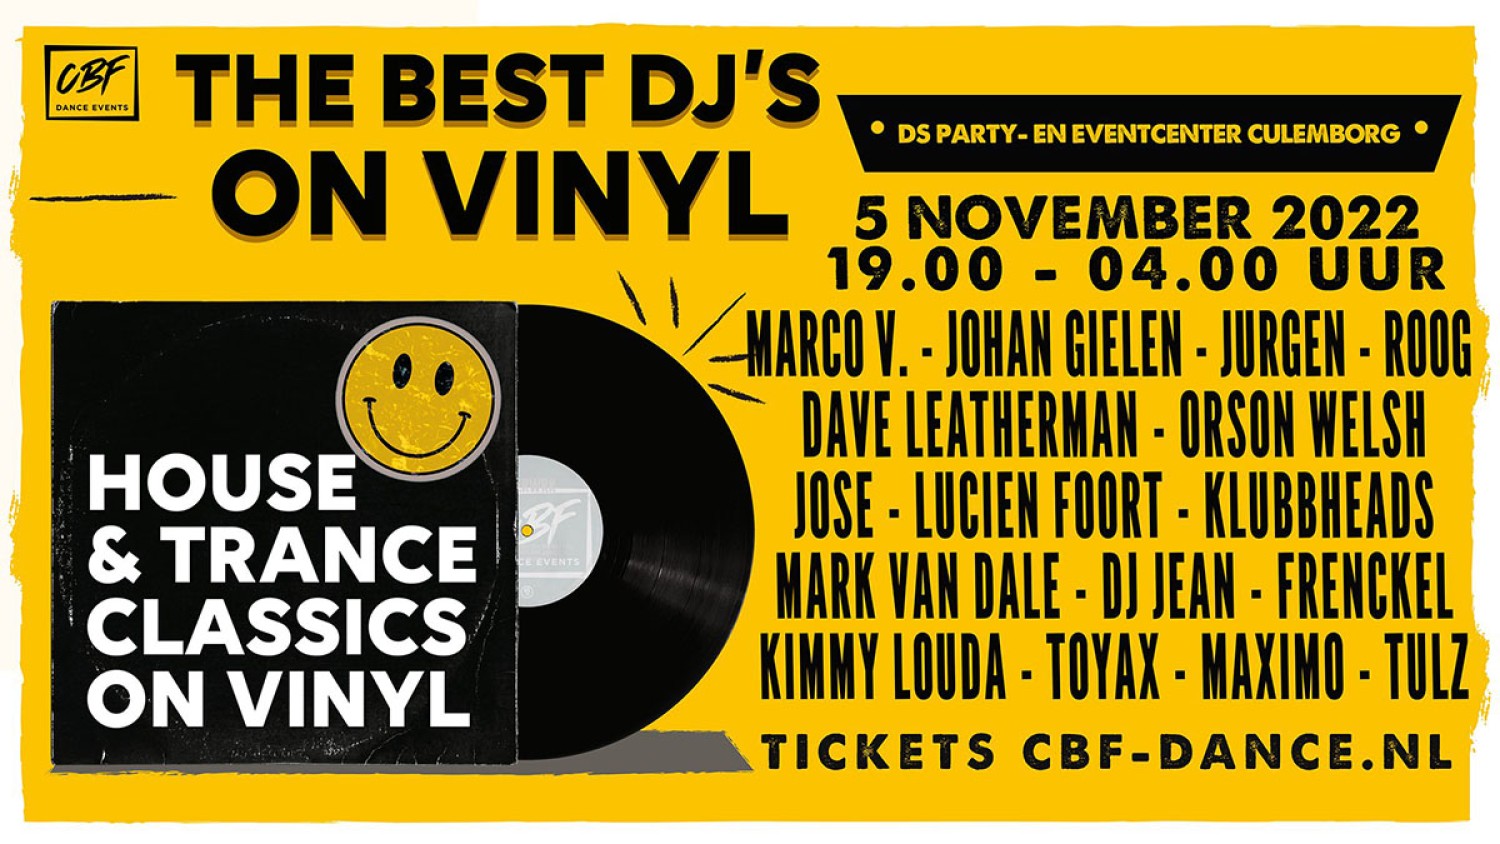 Party nieuws: Exclusief evenement: The Best Dj's on Vinyl